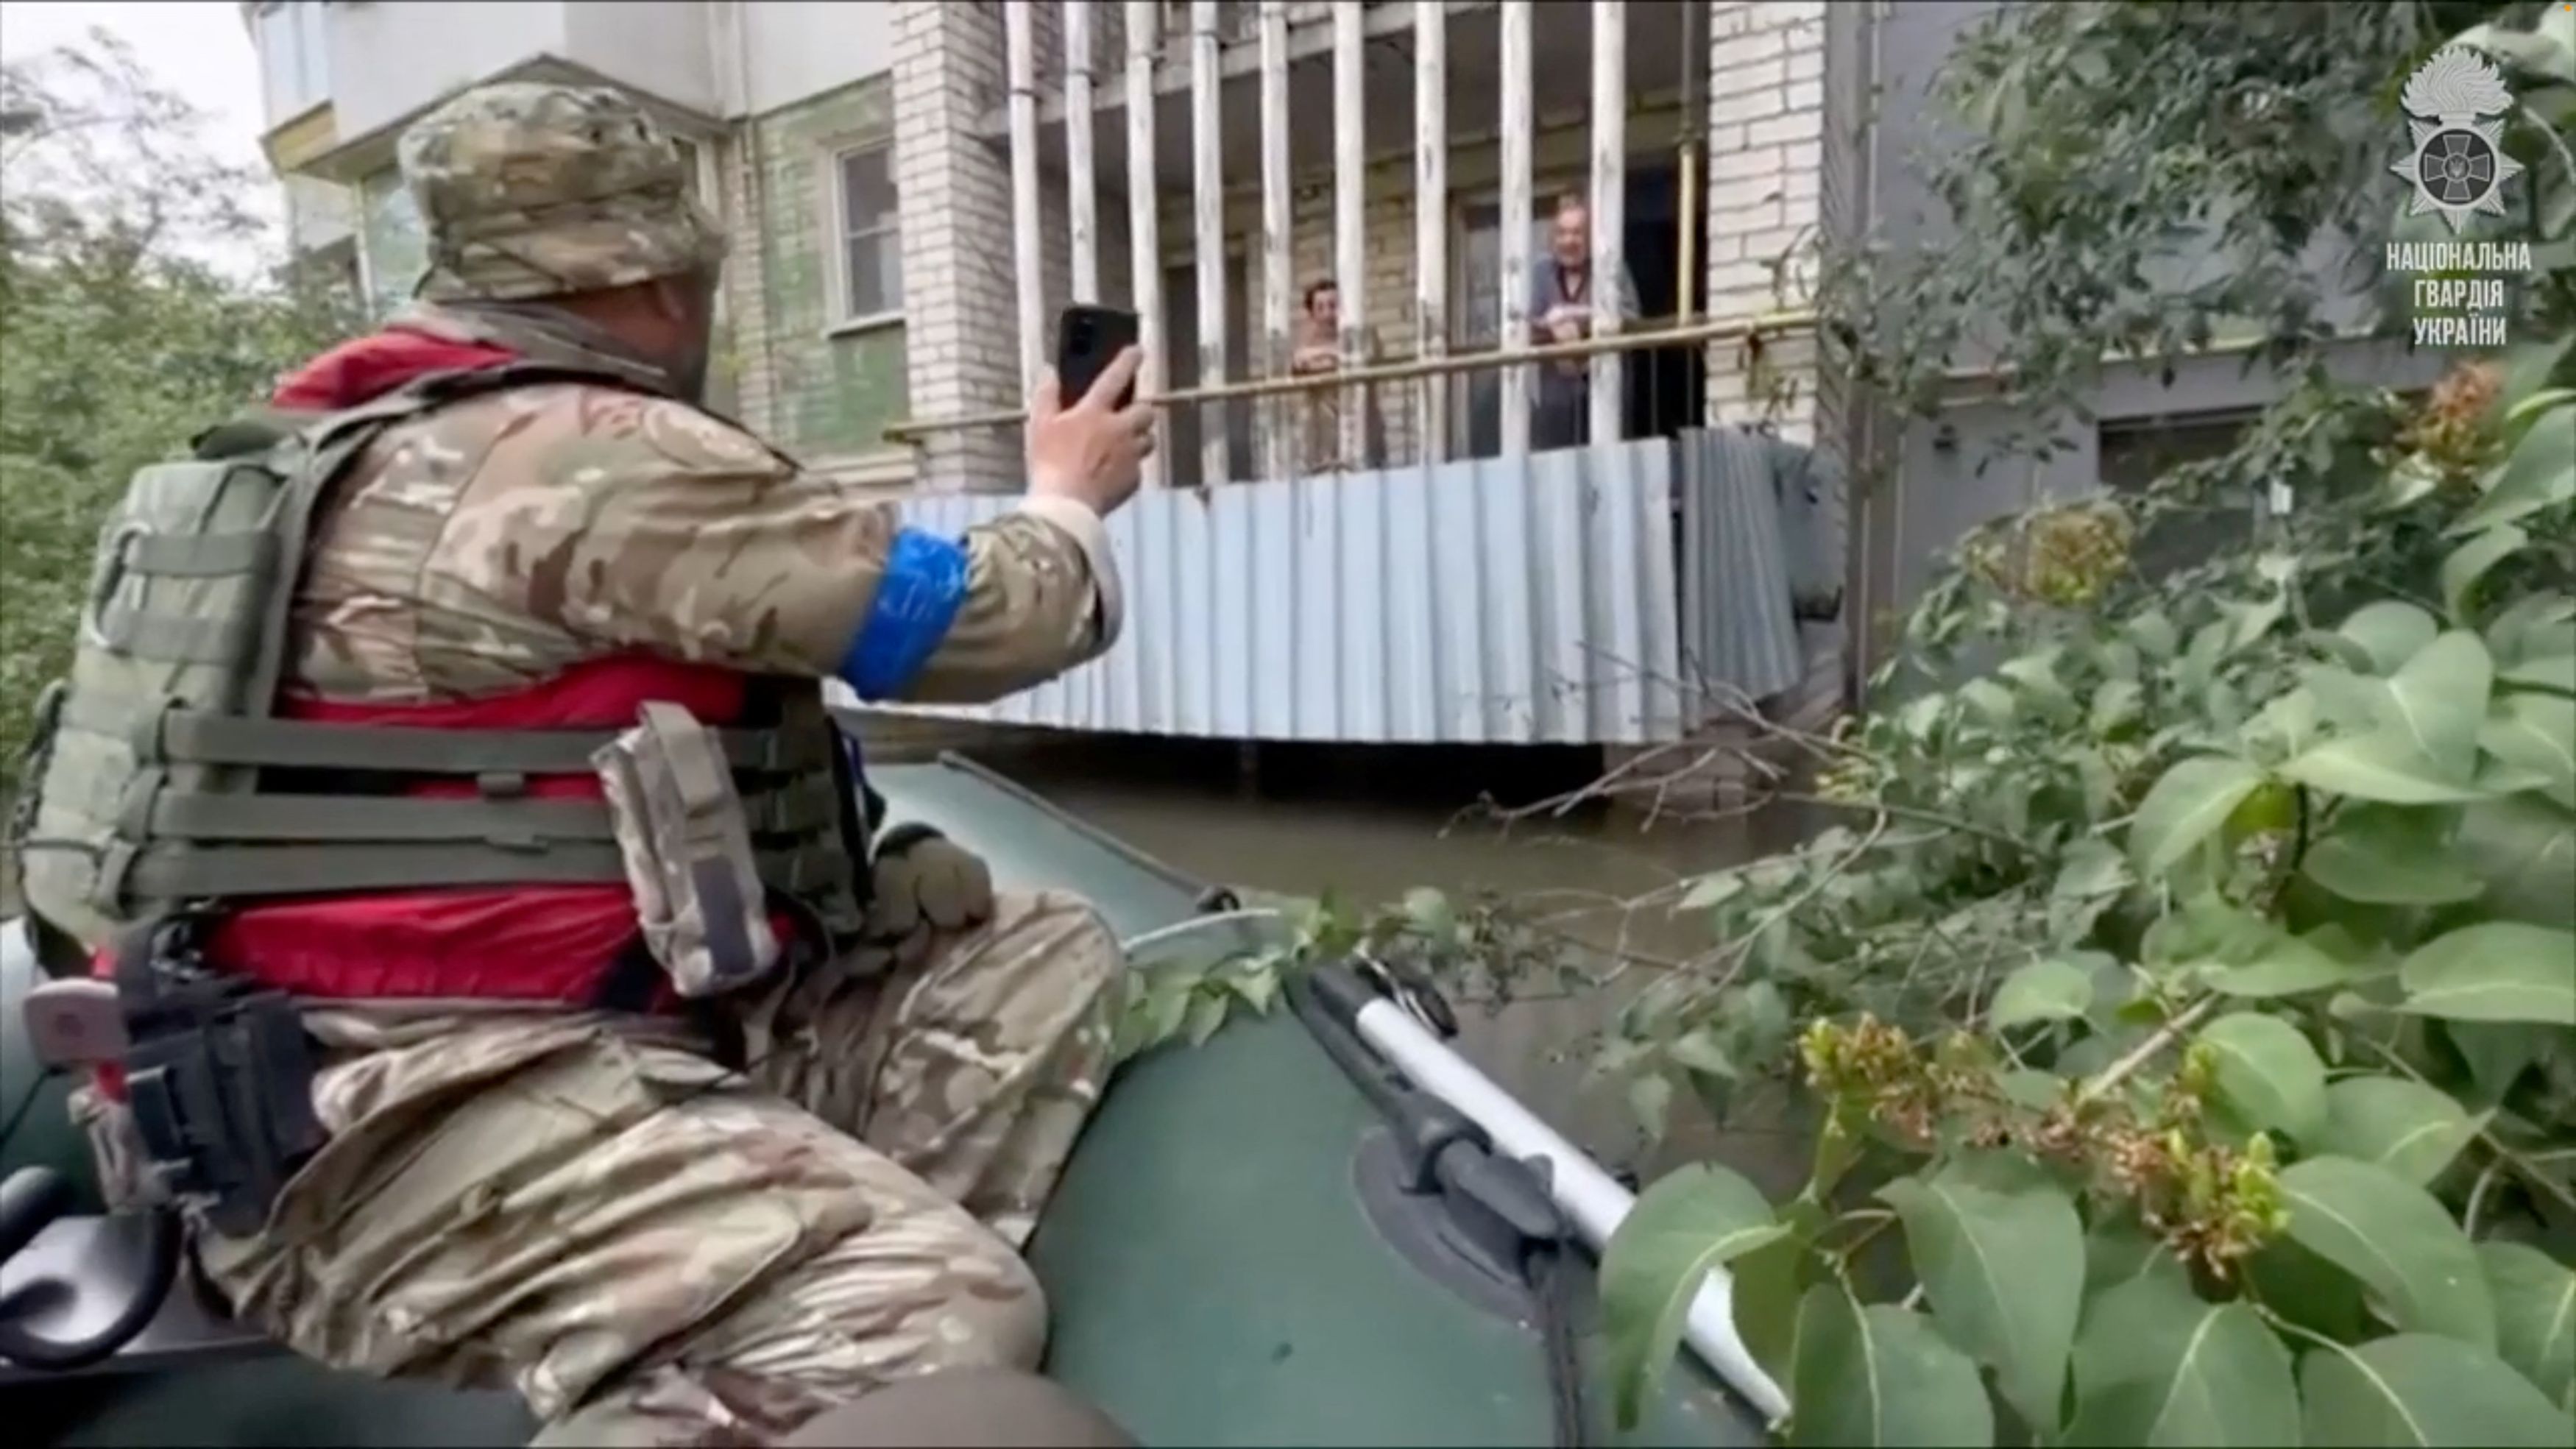 Ανατίναξη φράγματος στη Χερσώνα: Το Κίεβο κατηγορεί τους Ρώσους ότι πυροβολούν τους διασώστες - Γιατί είναι «σοκαρισμένος» ο Ζελένσκι